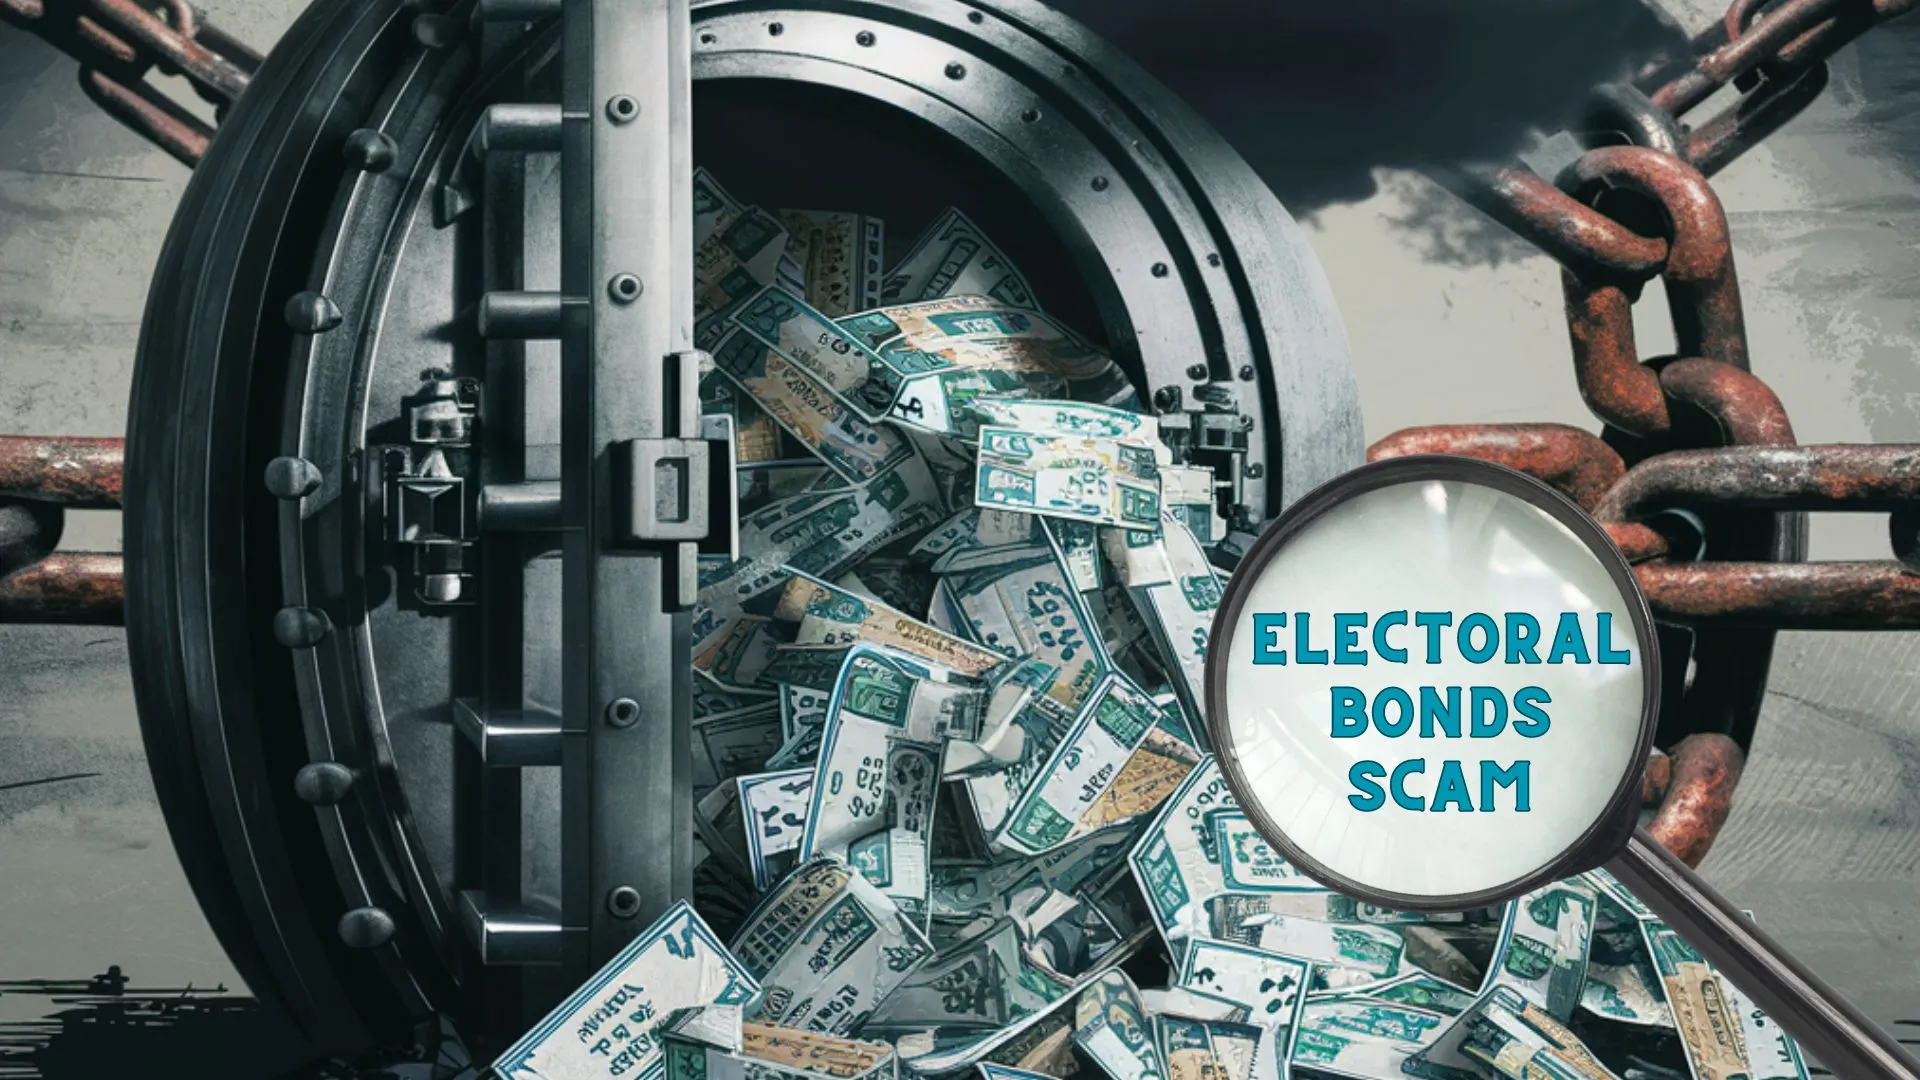 Electoral Bonds scam